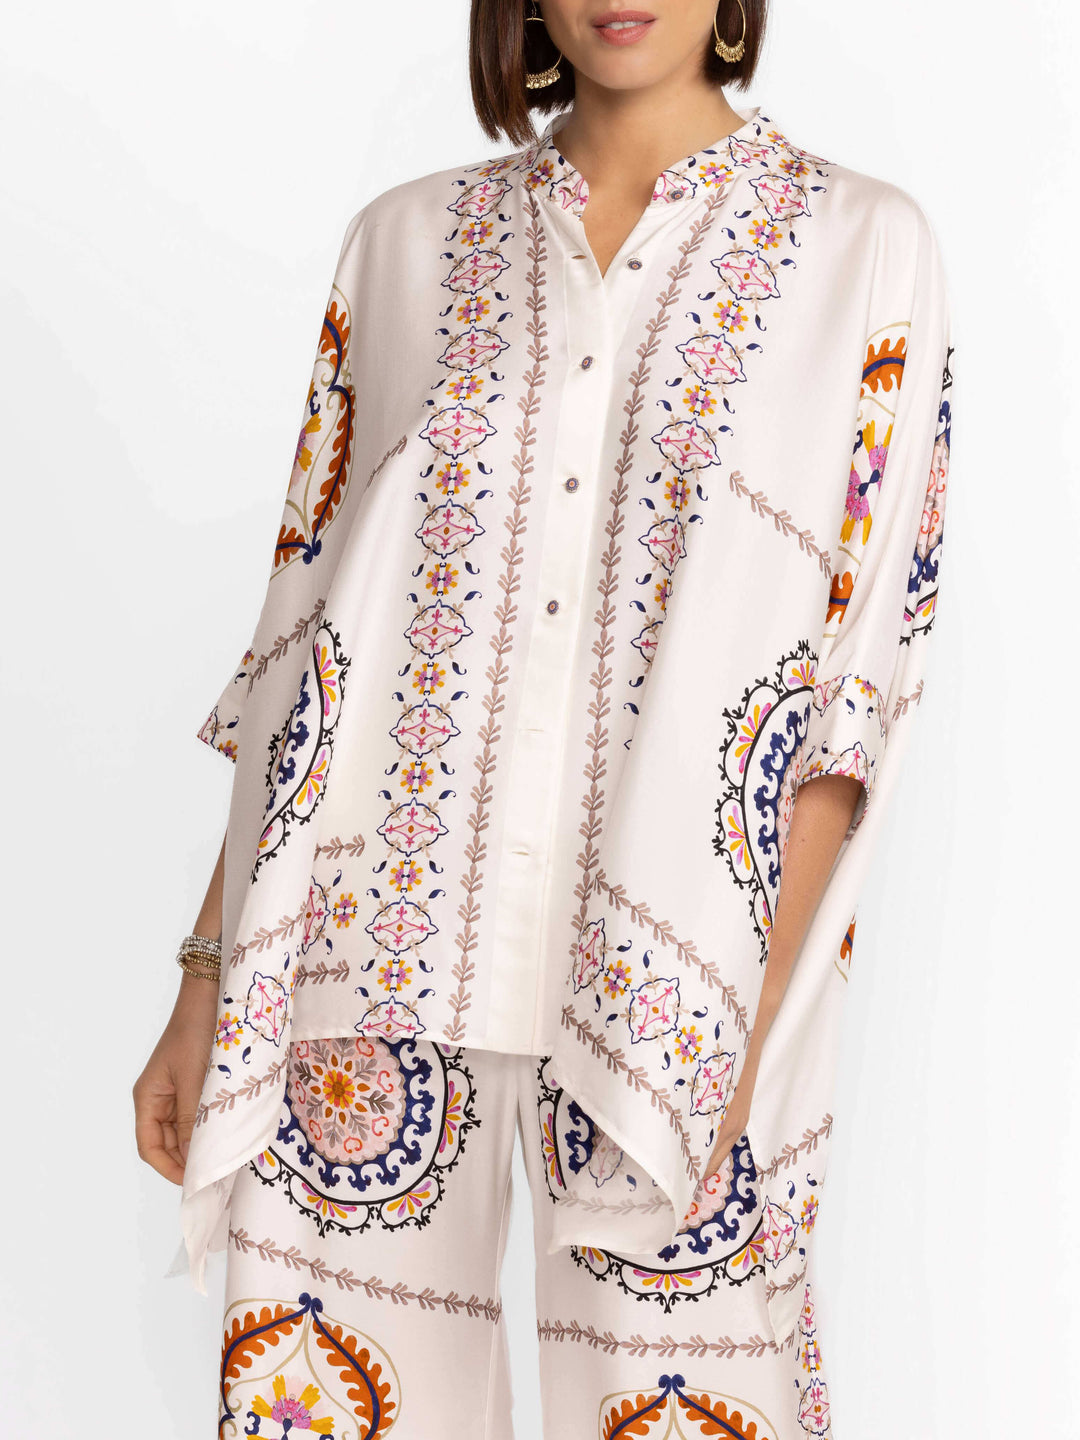 Blusas soltas modernas e requintadas com estampa floral de cetim